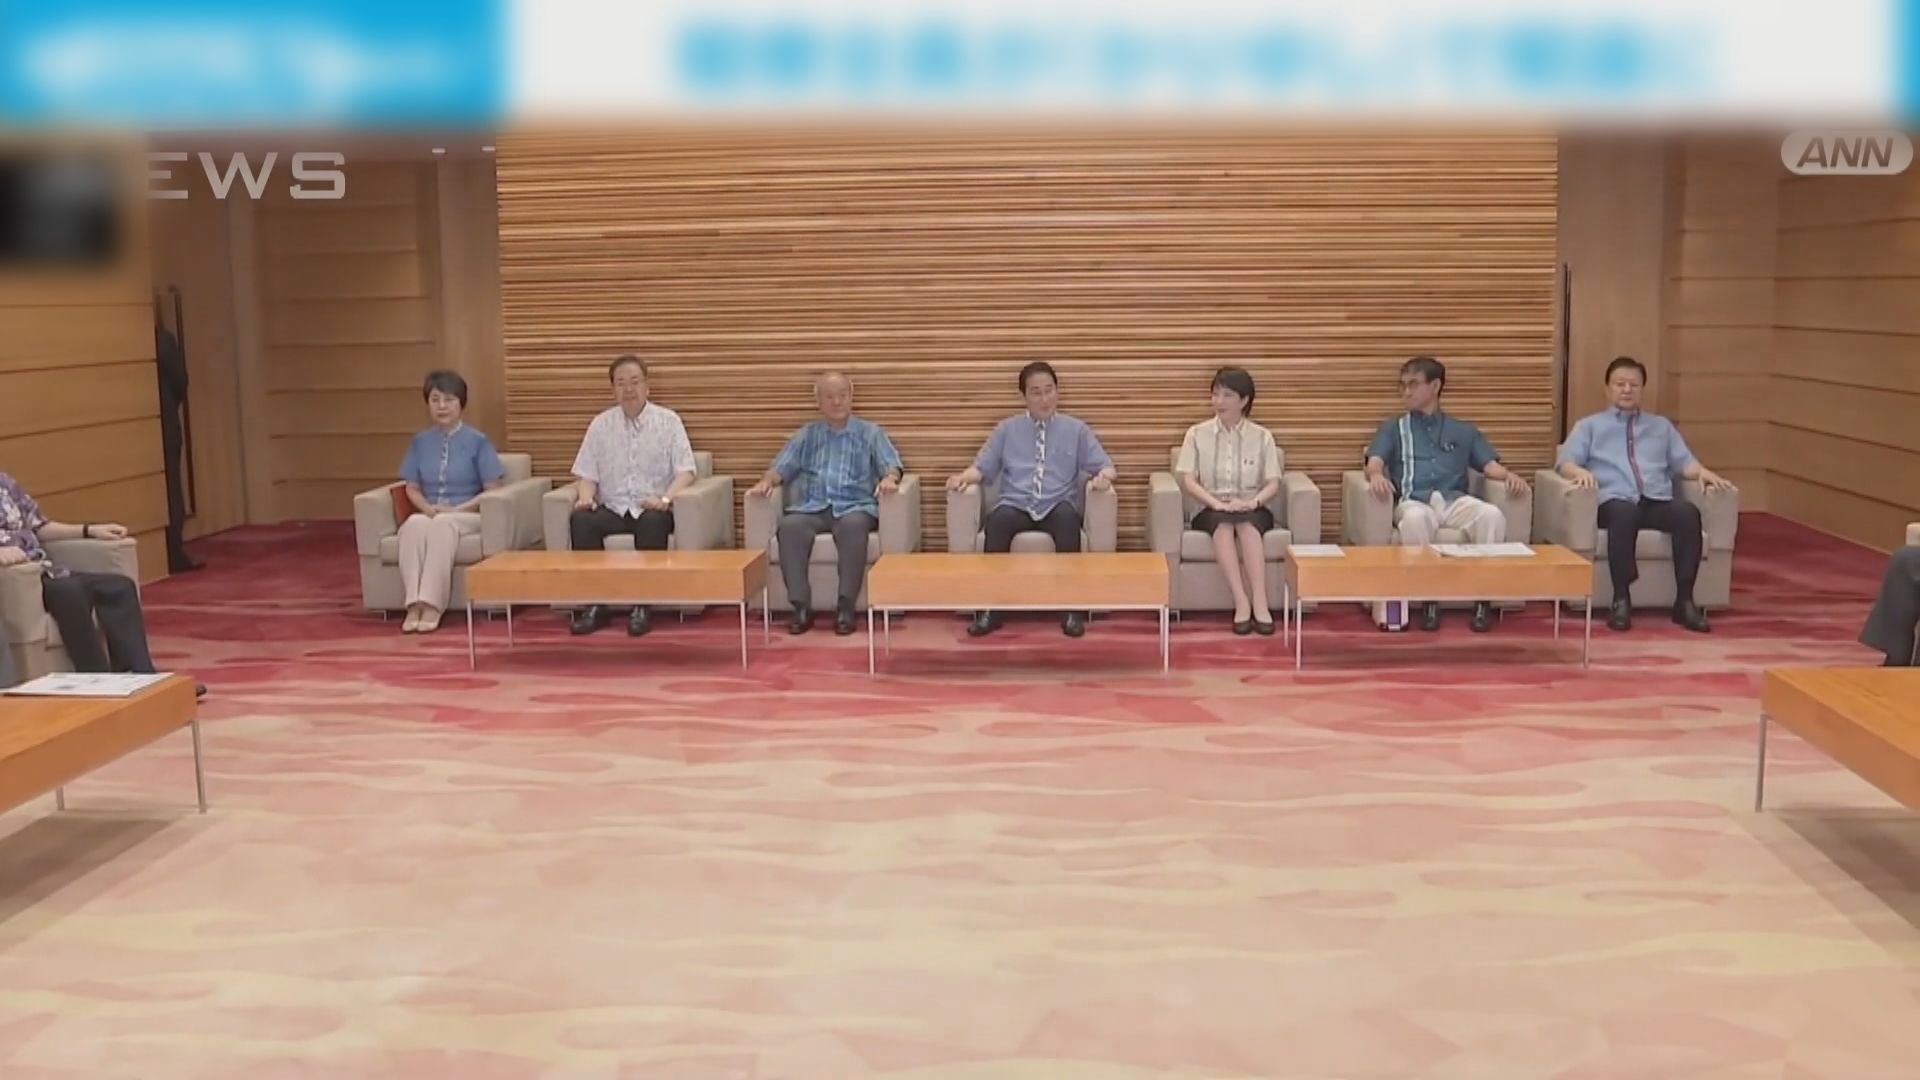 岸田文雄與閣員齊穿沖繩傳統服裝 推廣「清涼商務」